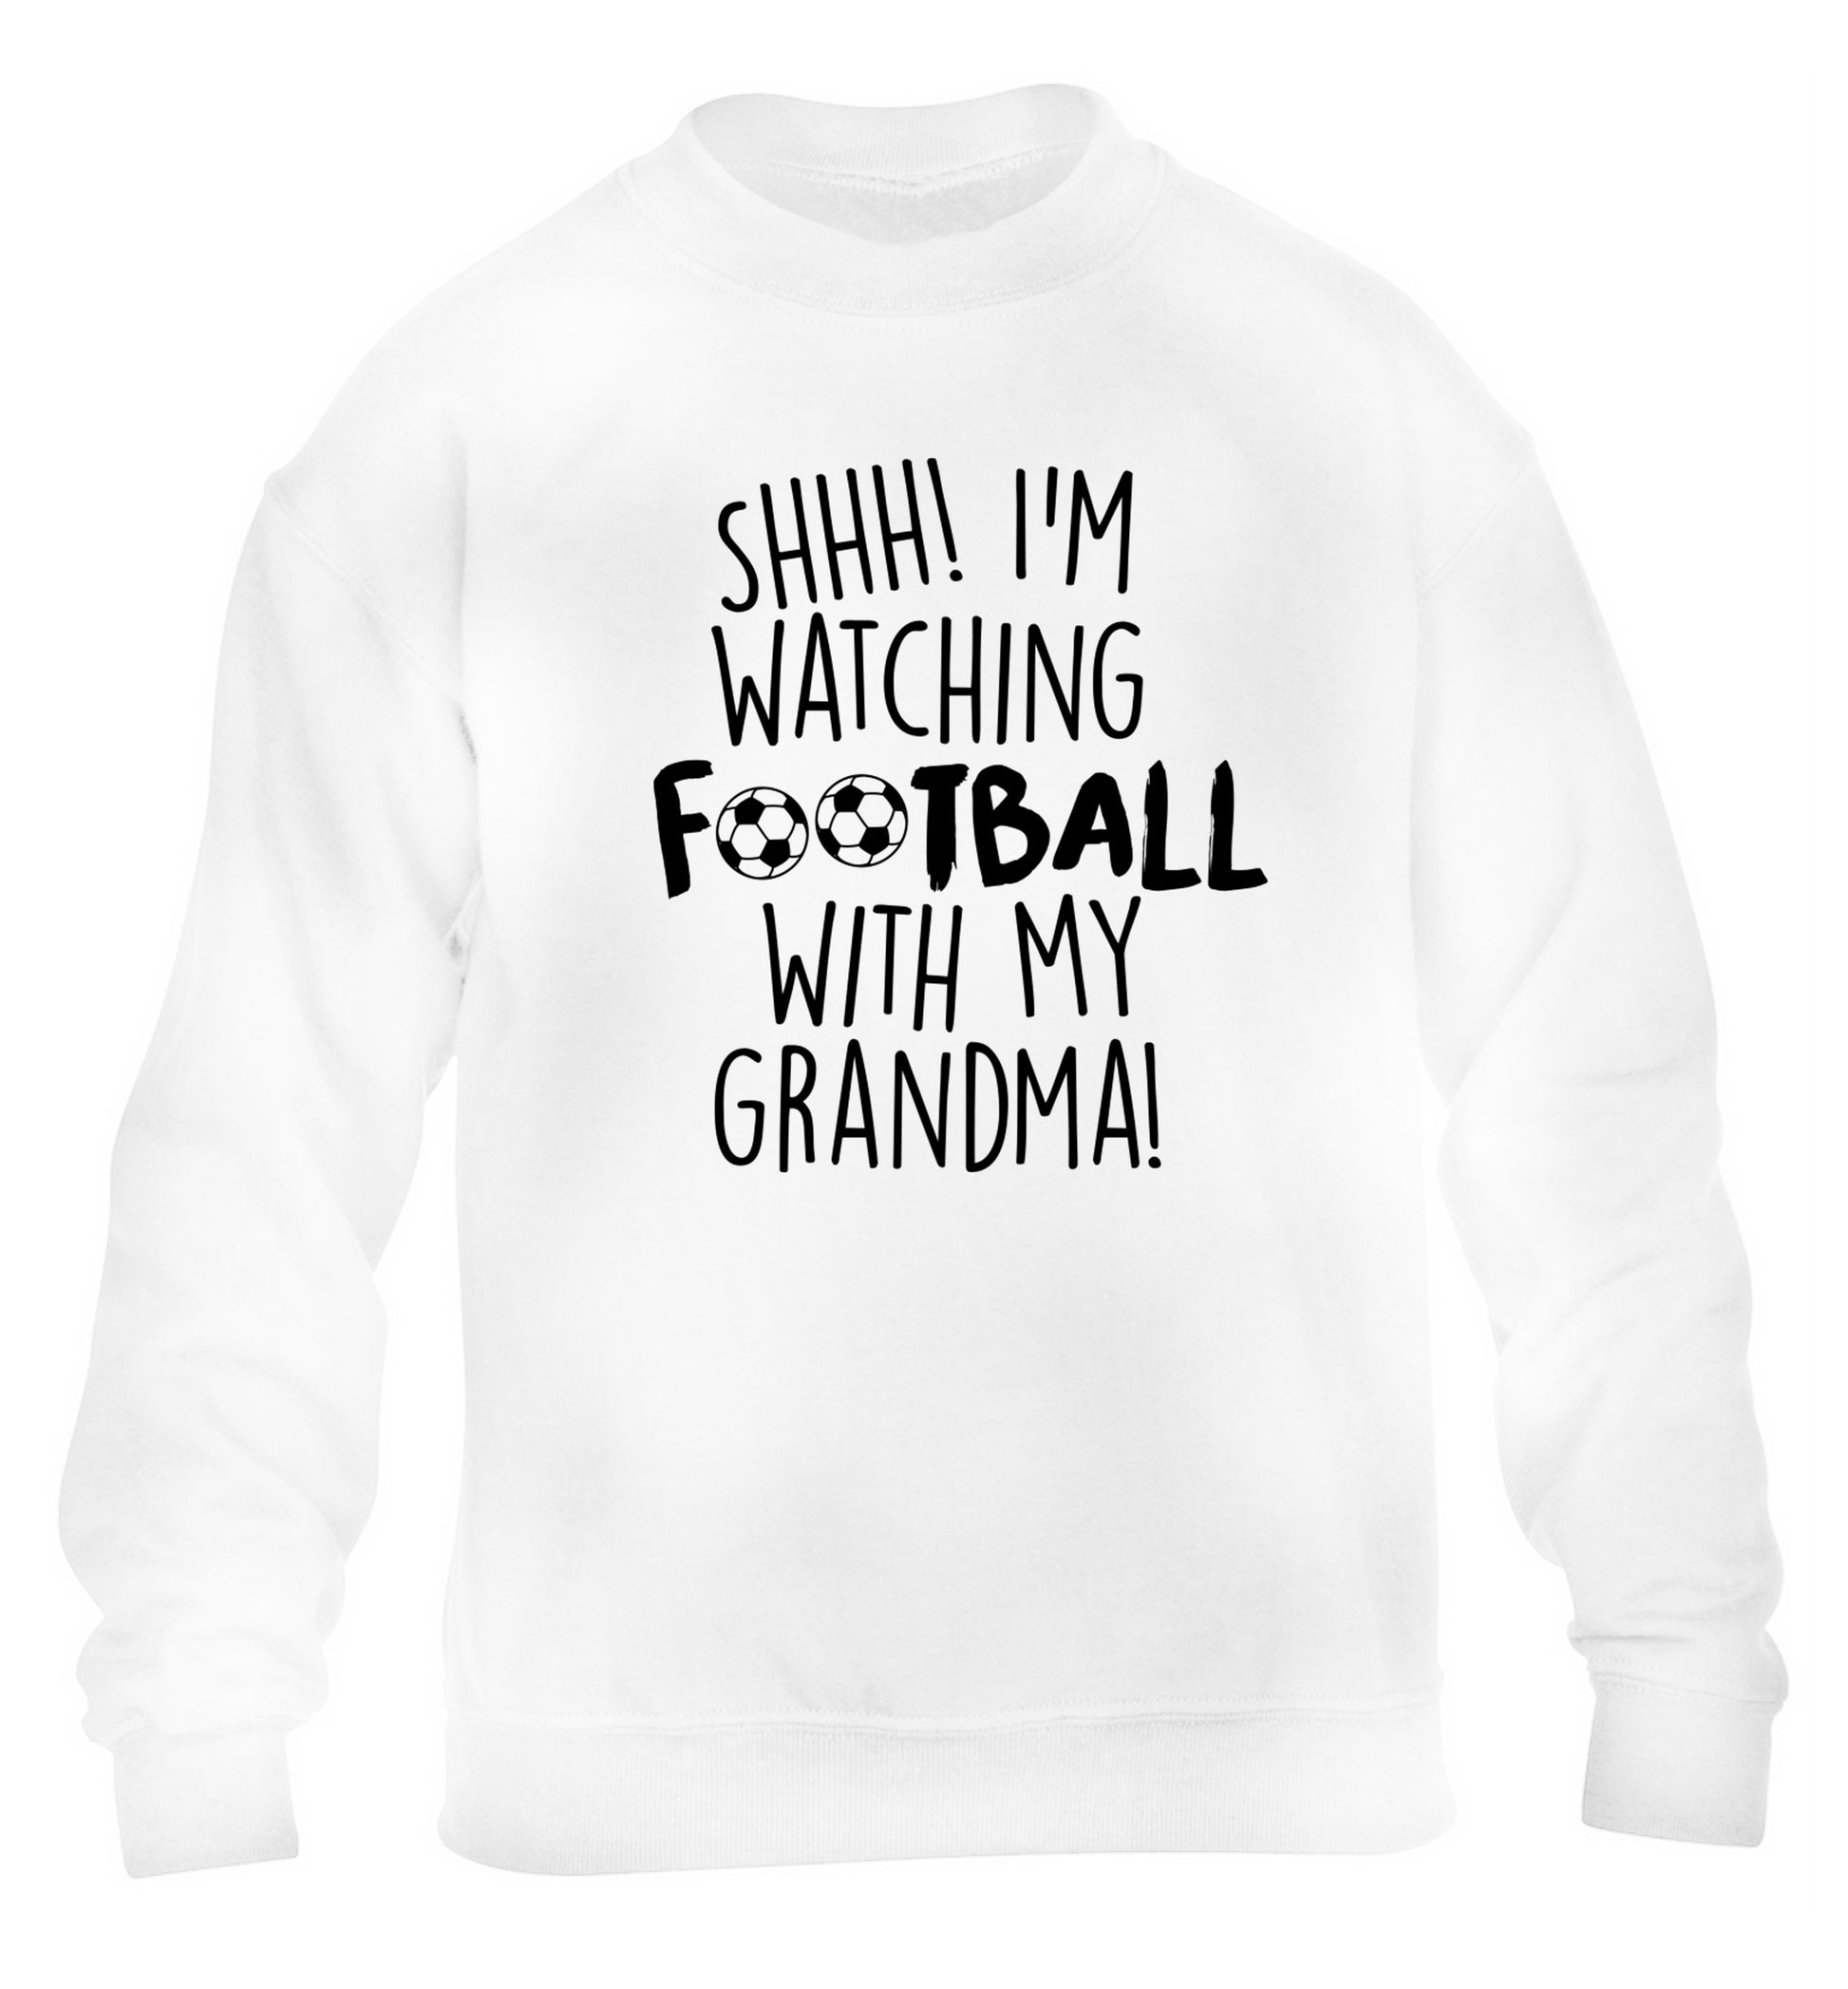 Shhh I'm watching football with my grandma children's white sweater 12-14 Years